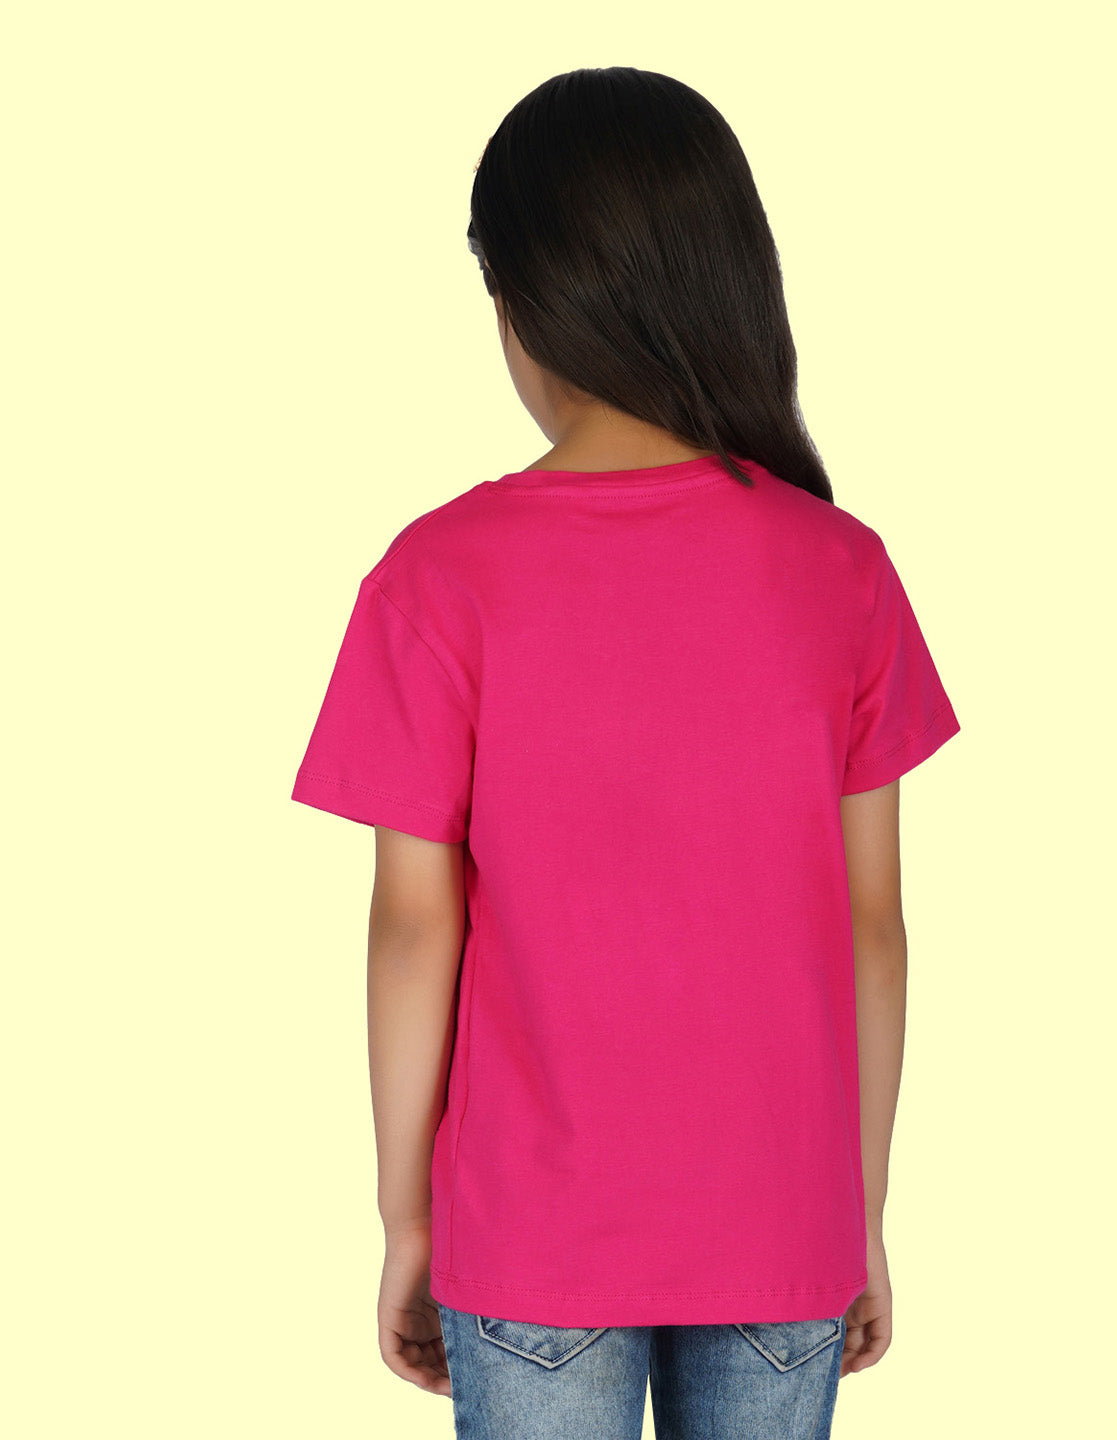 Nusyl Girls Half Sleeves Pink Fairy printed T-shirt